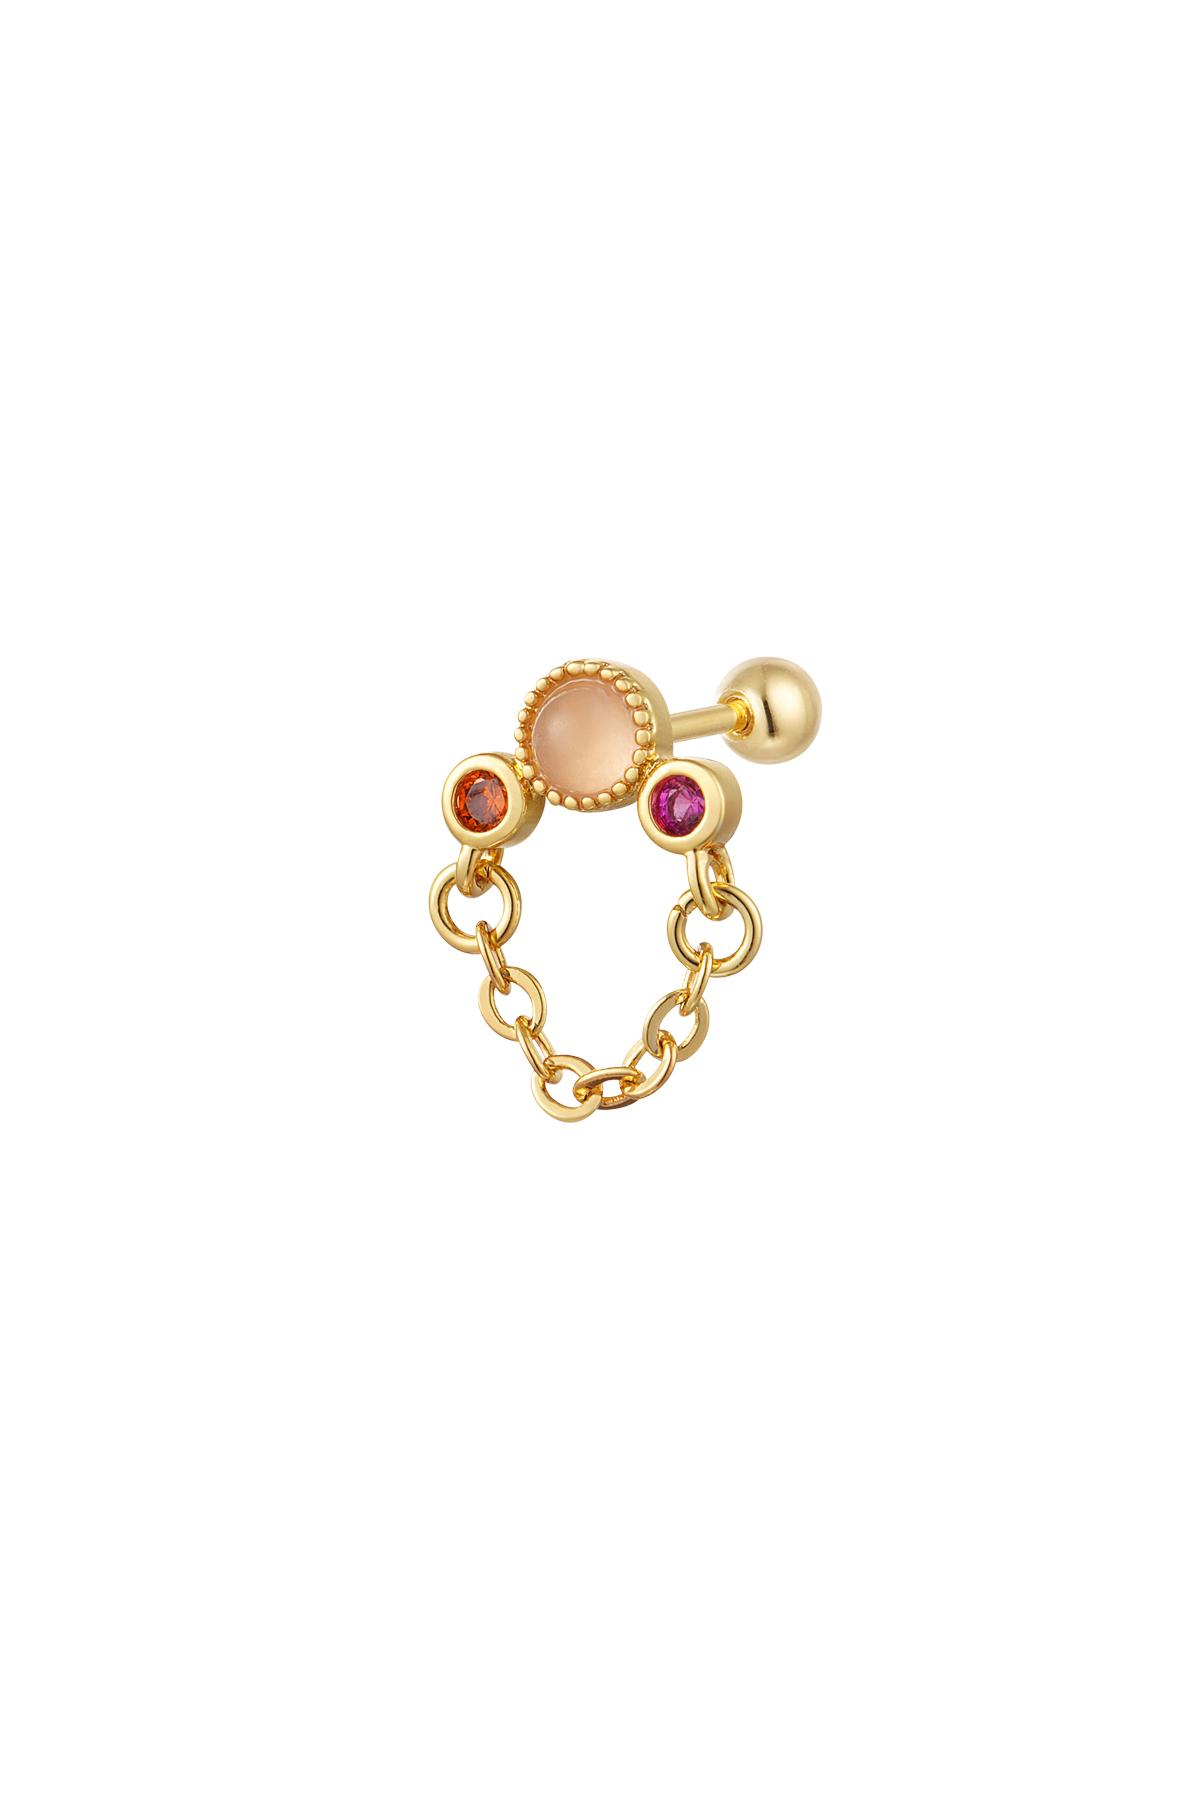 Piercing con cadena - Colección Sparkle Naranja & Oro Cobre h5 